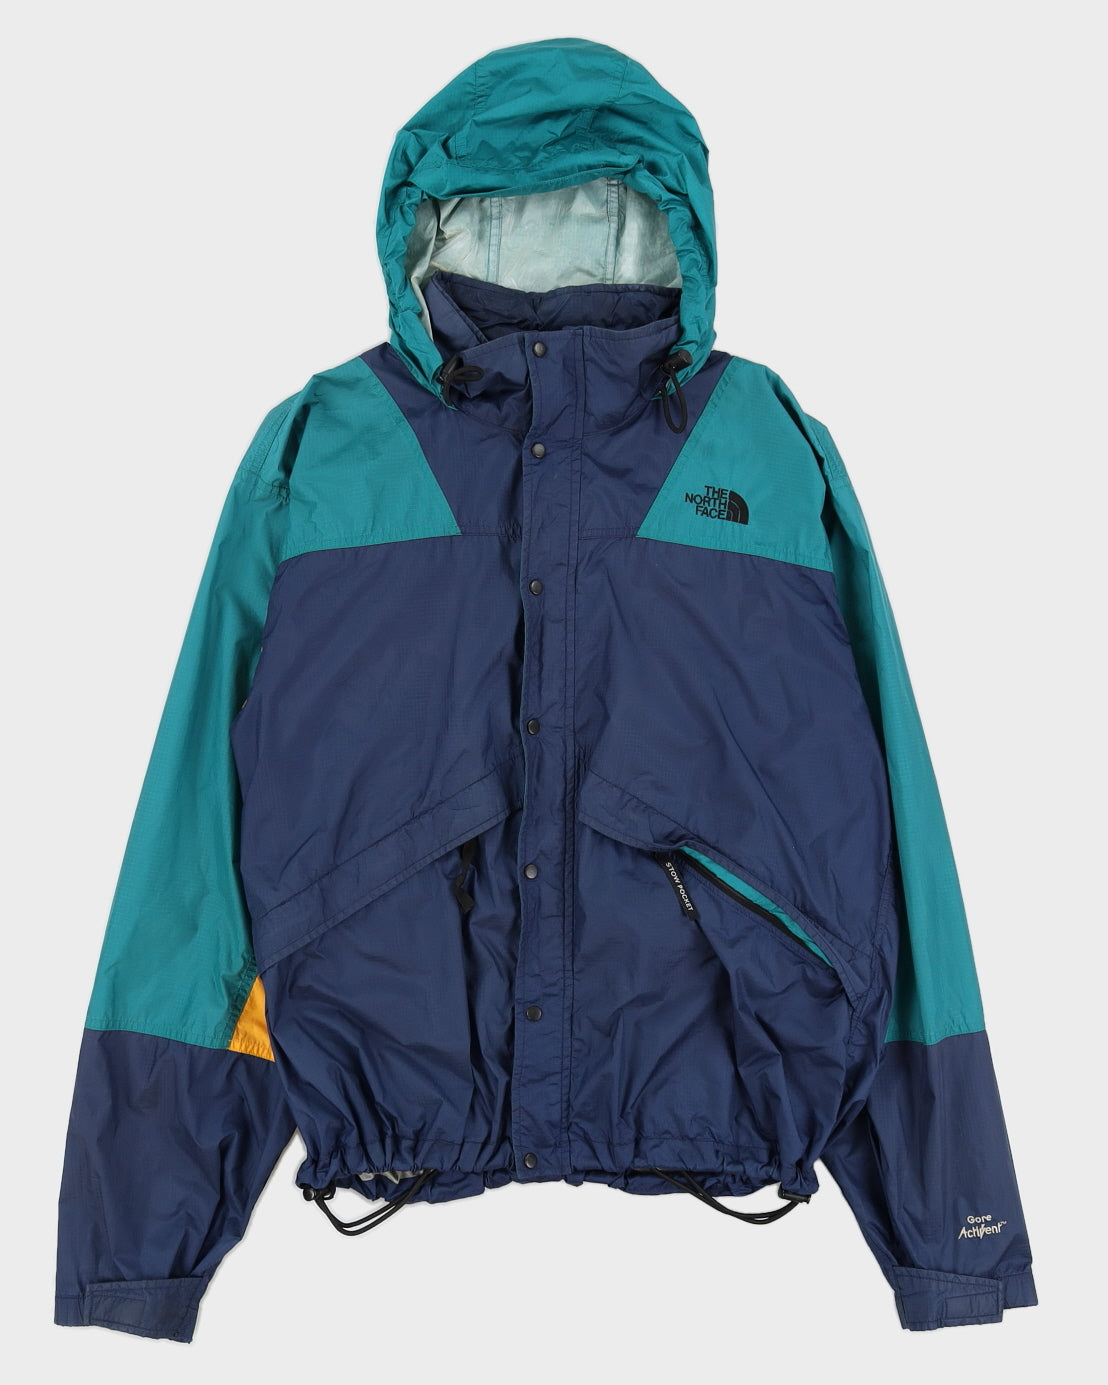 Vintage 90s The North Face Ski Jacket - L